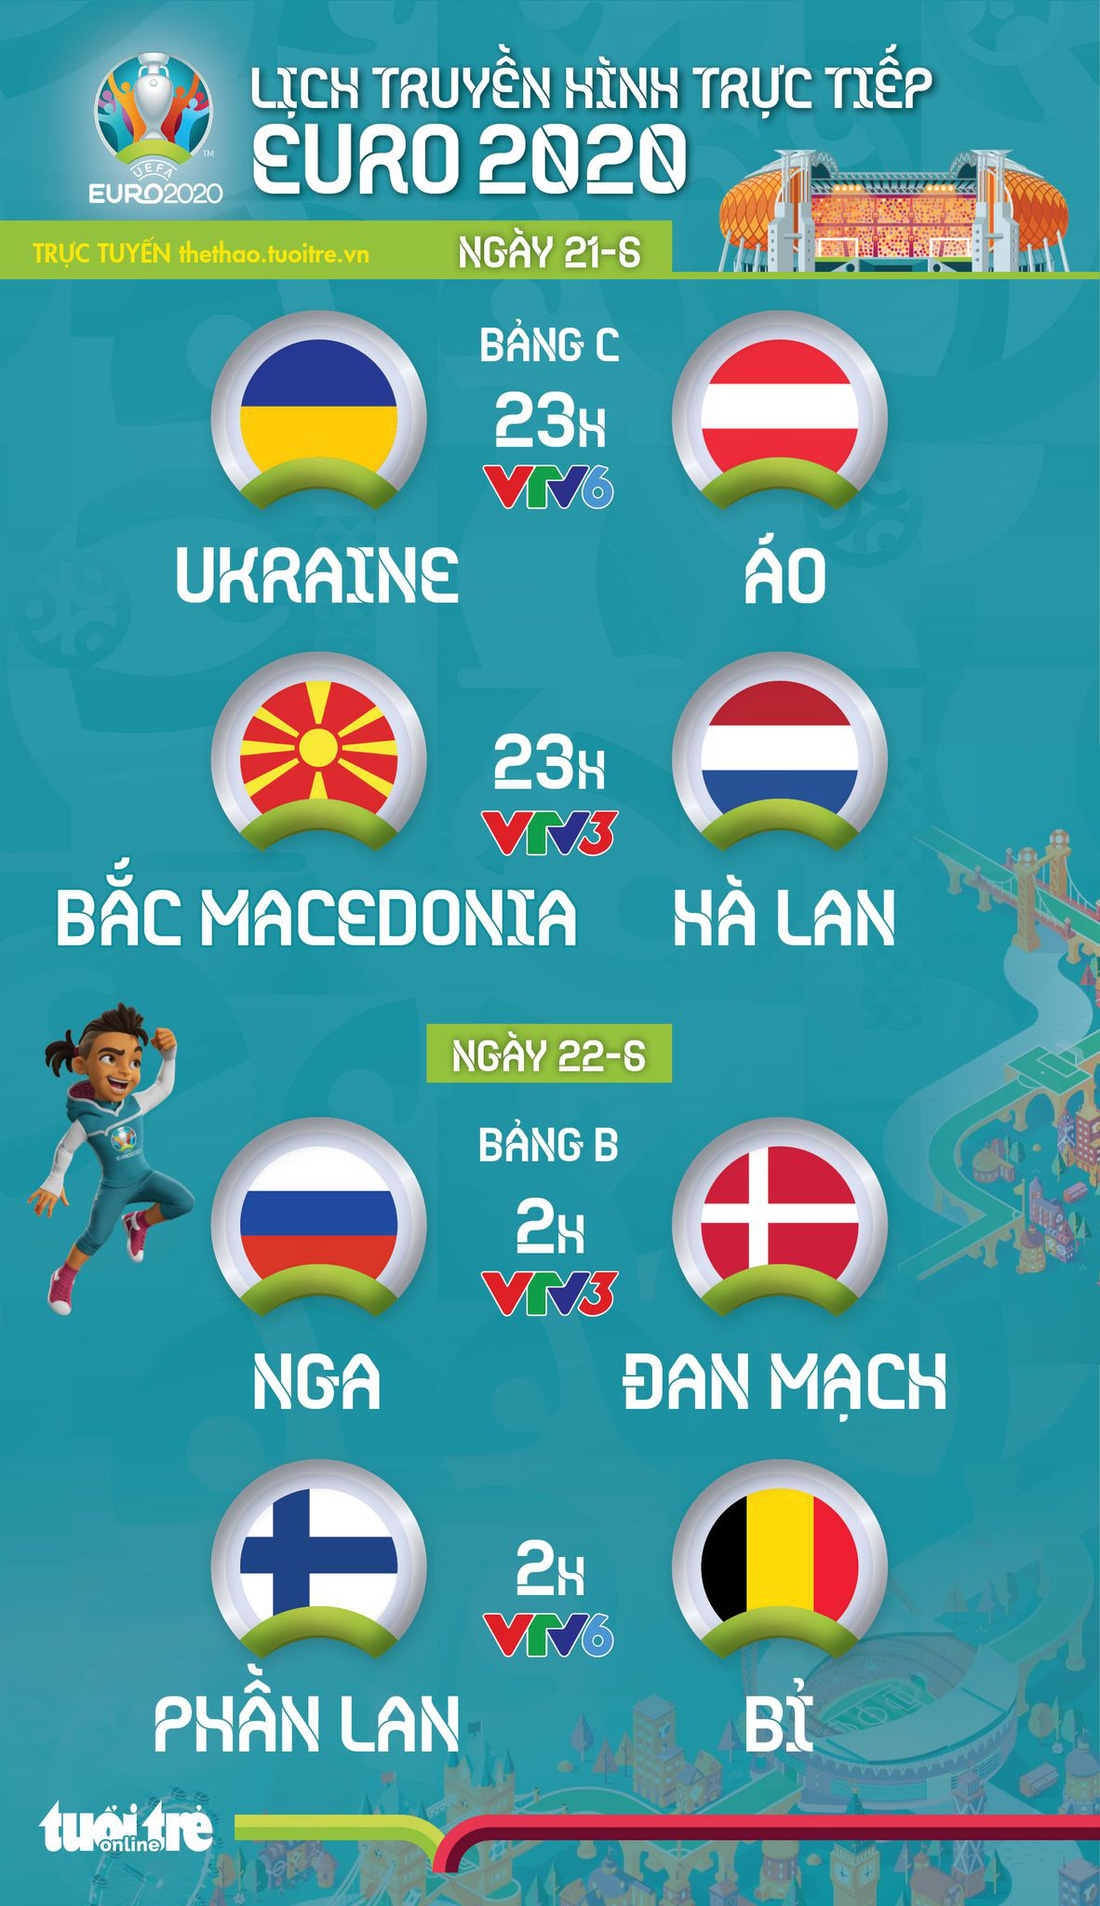 Lịch thi đấu Euro 2020: Ukraine - Áo, Bắc Macedonia - Hà Lan, Nga - Đan Mạch, Phần Lan - Bỉ - Ảnh 1.